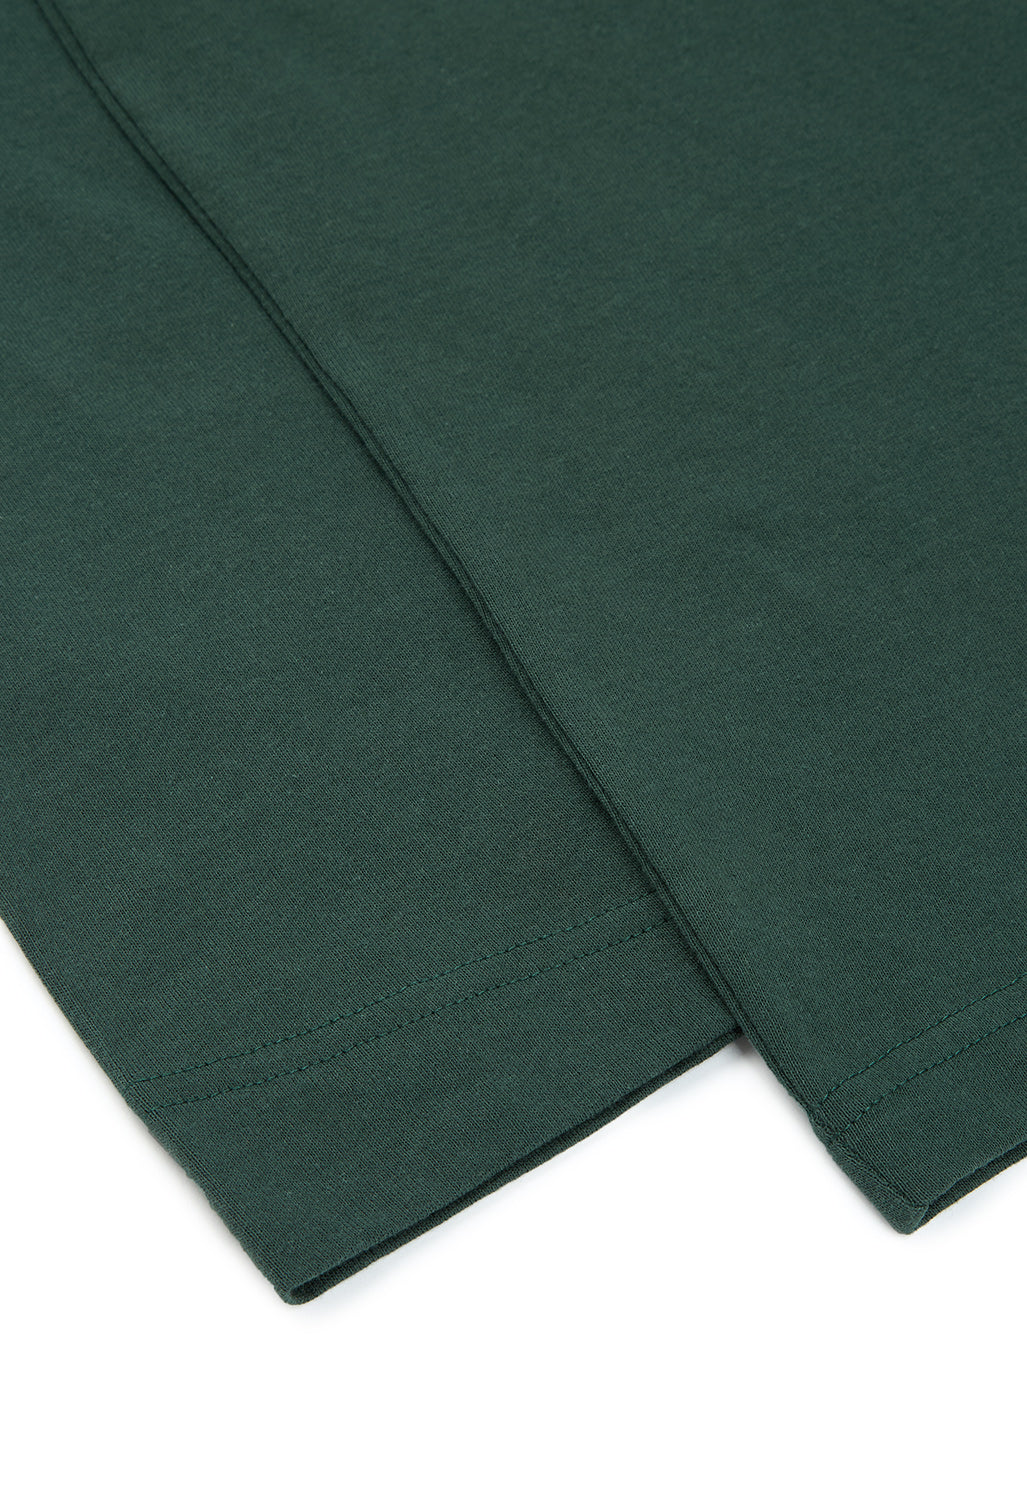 Montbell Pear Skin Cotton Long Sleeve T Yamayama T-Shirt - Dark Green